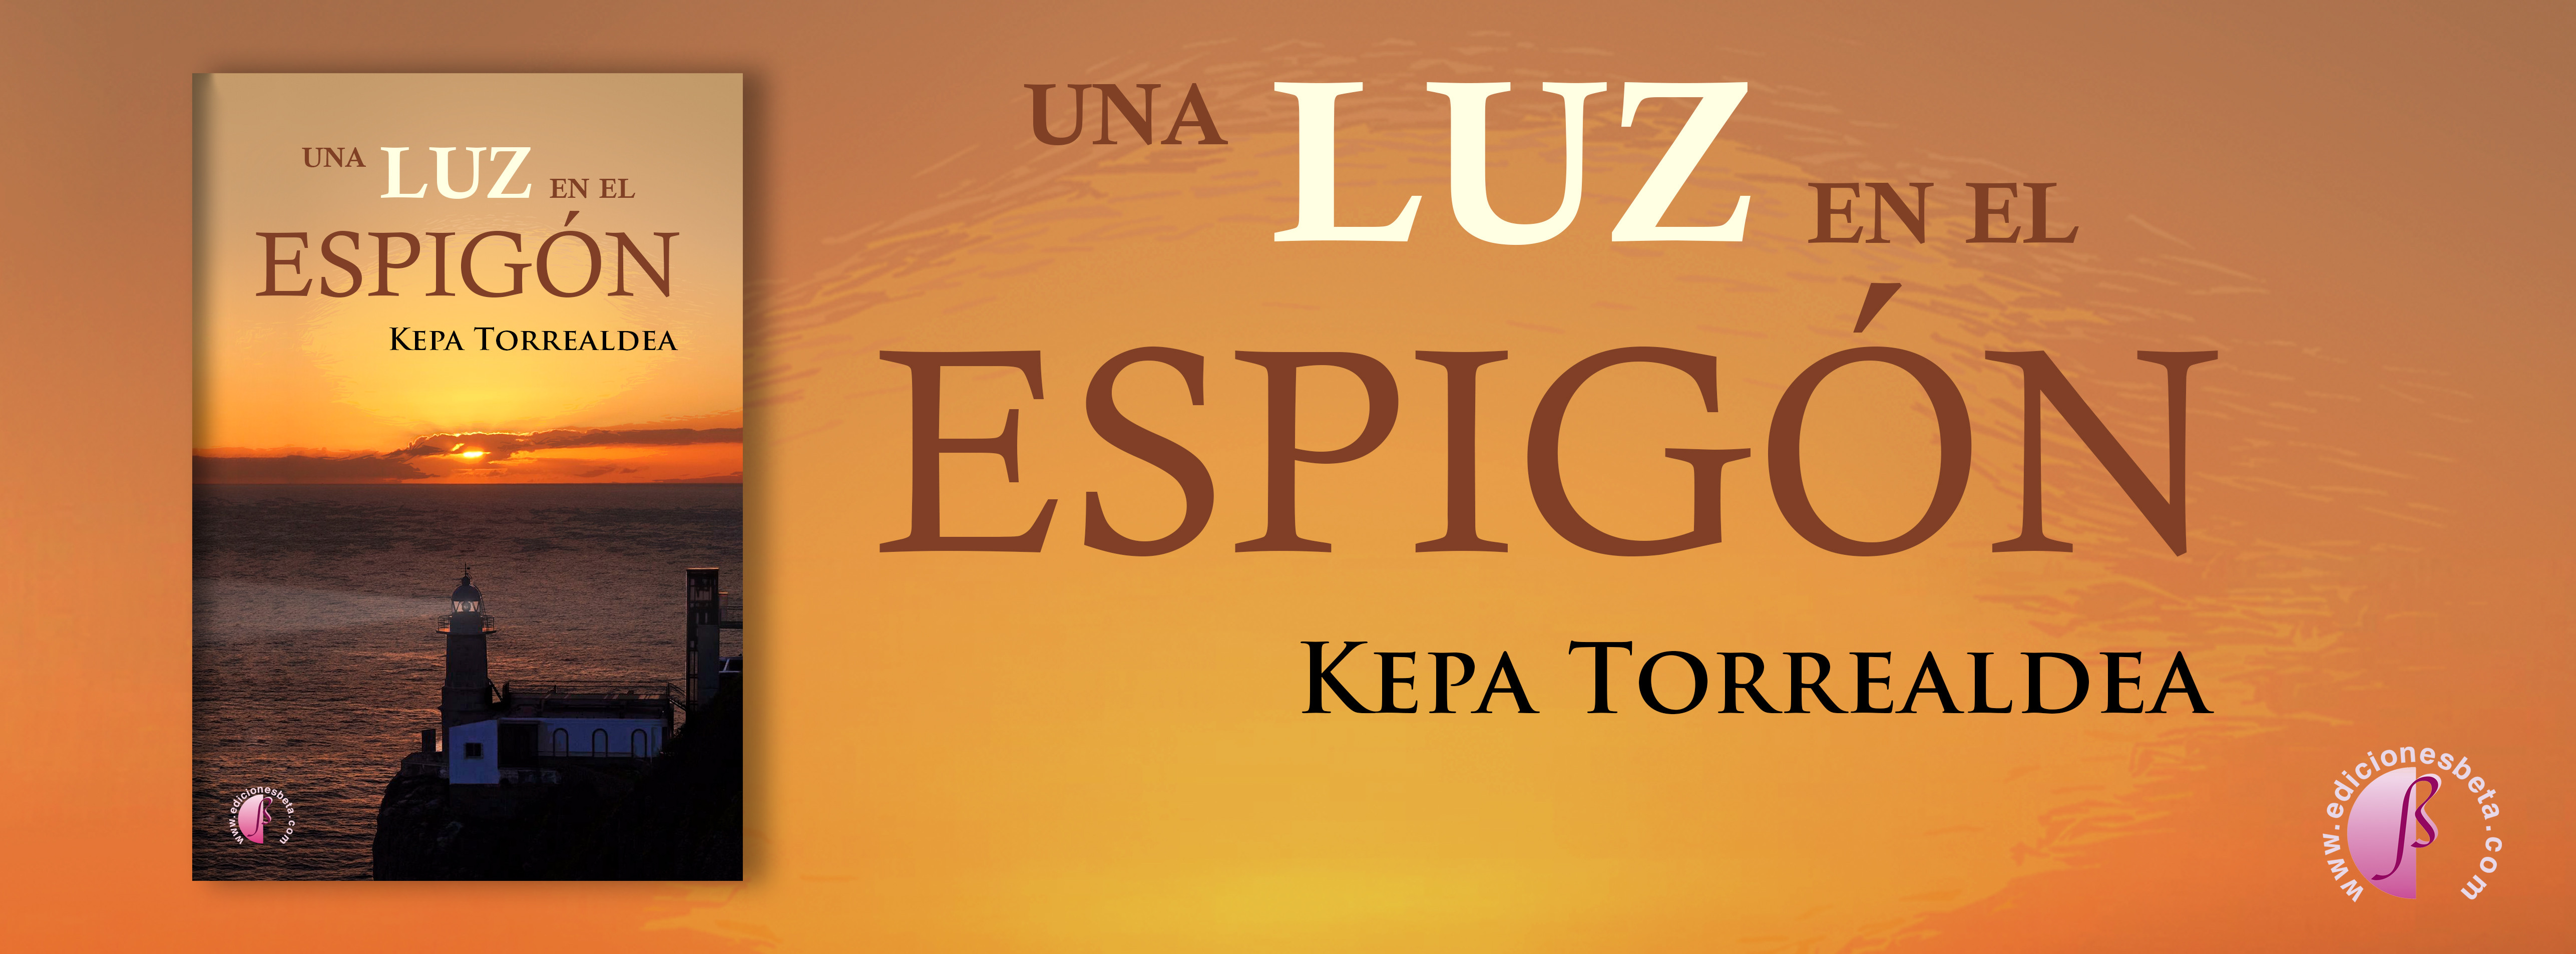 Una luz en el espigón - Kepa Torrealdea